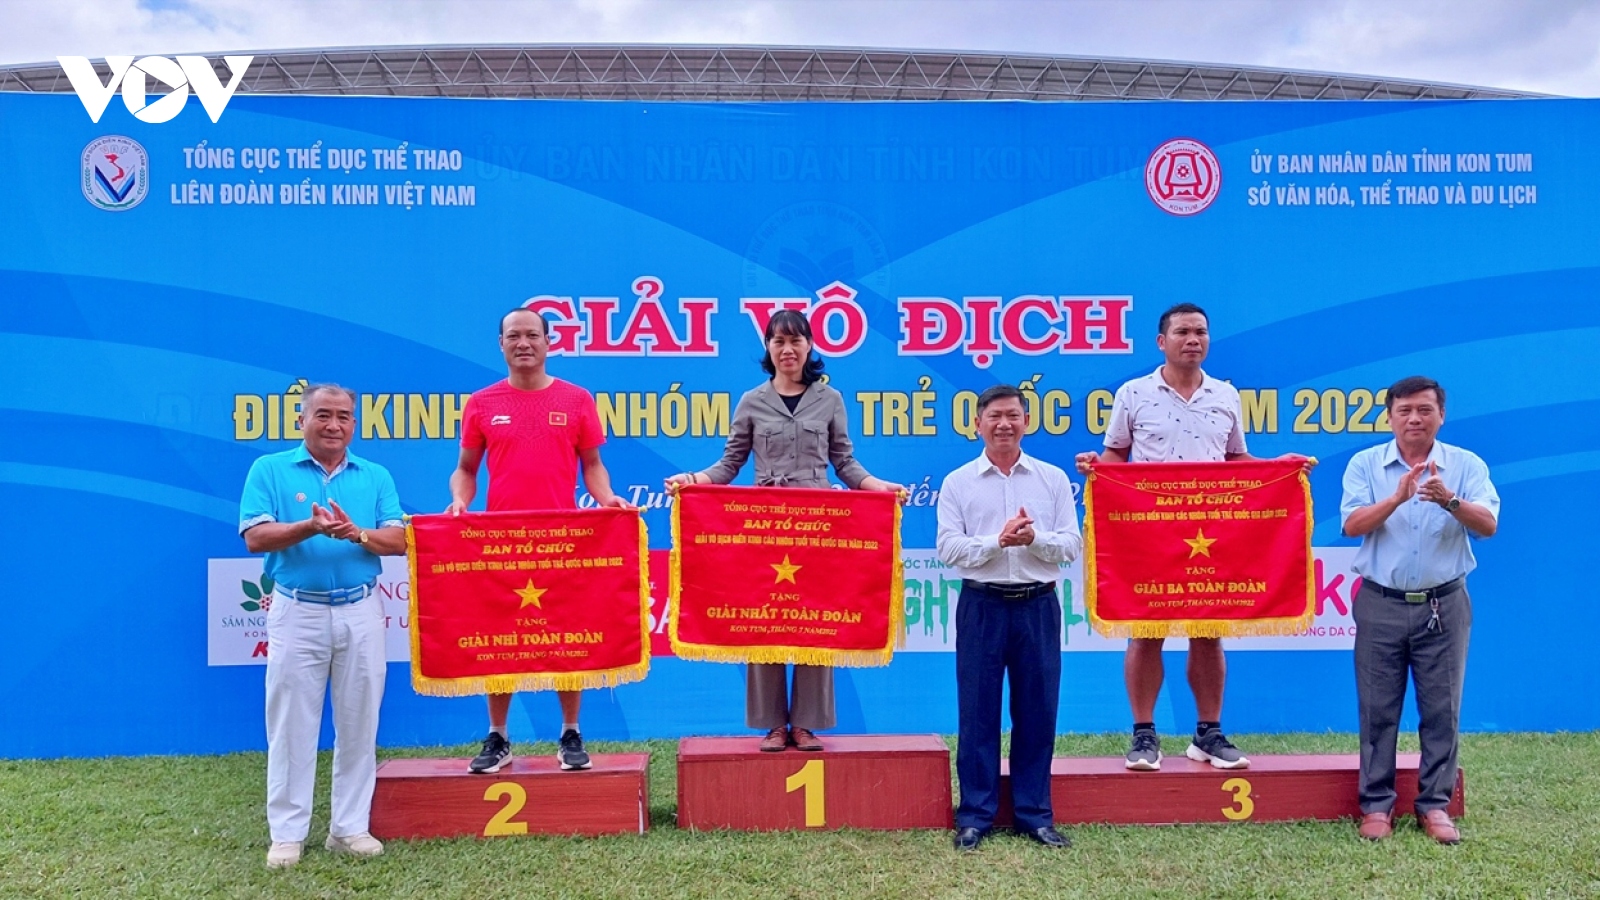 Hà Nội giành ngôi nhất toàn đoàn ở Giải Điền kinh các lứa tuổi trẻ quốc gia 2022